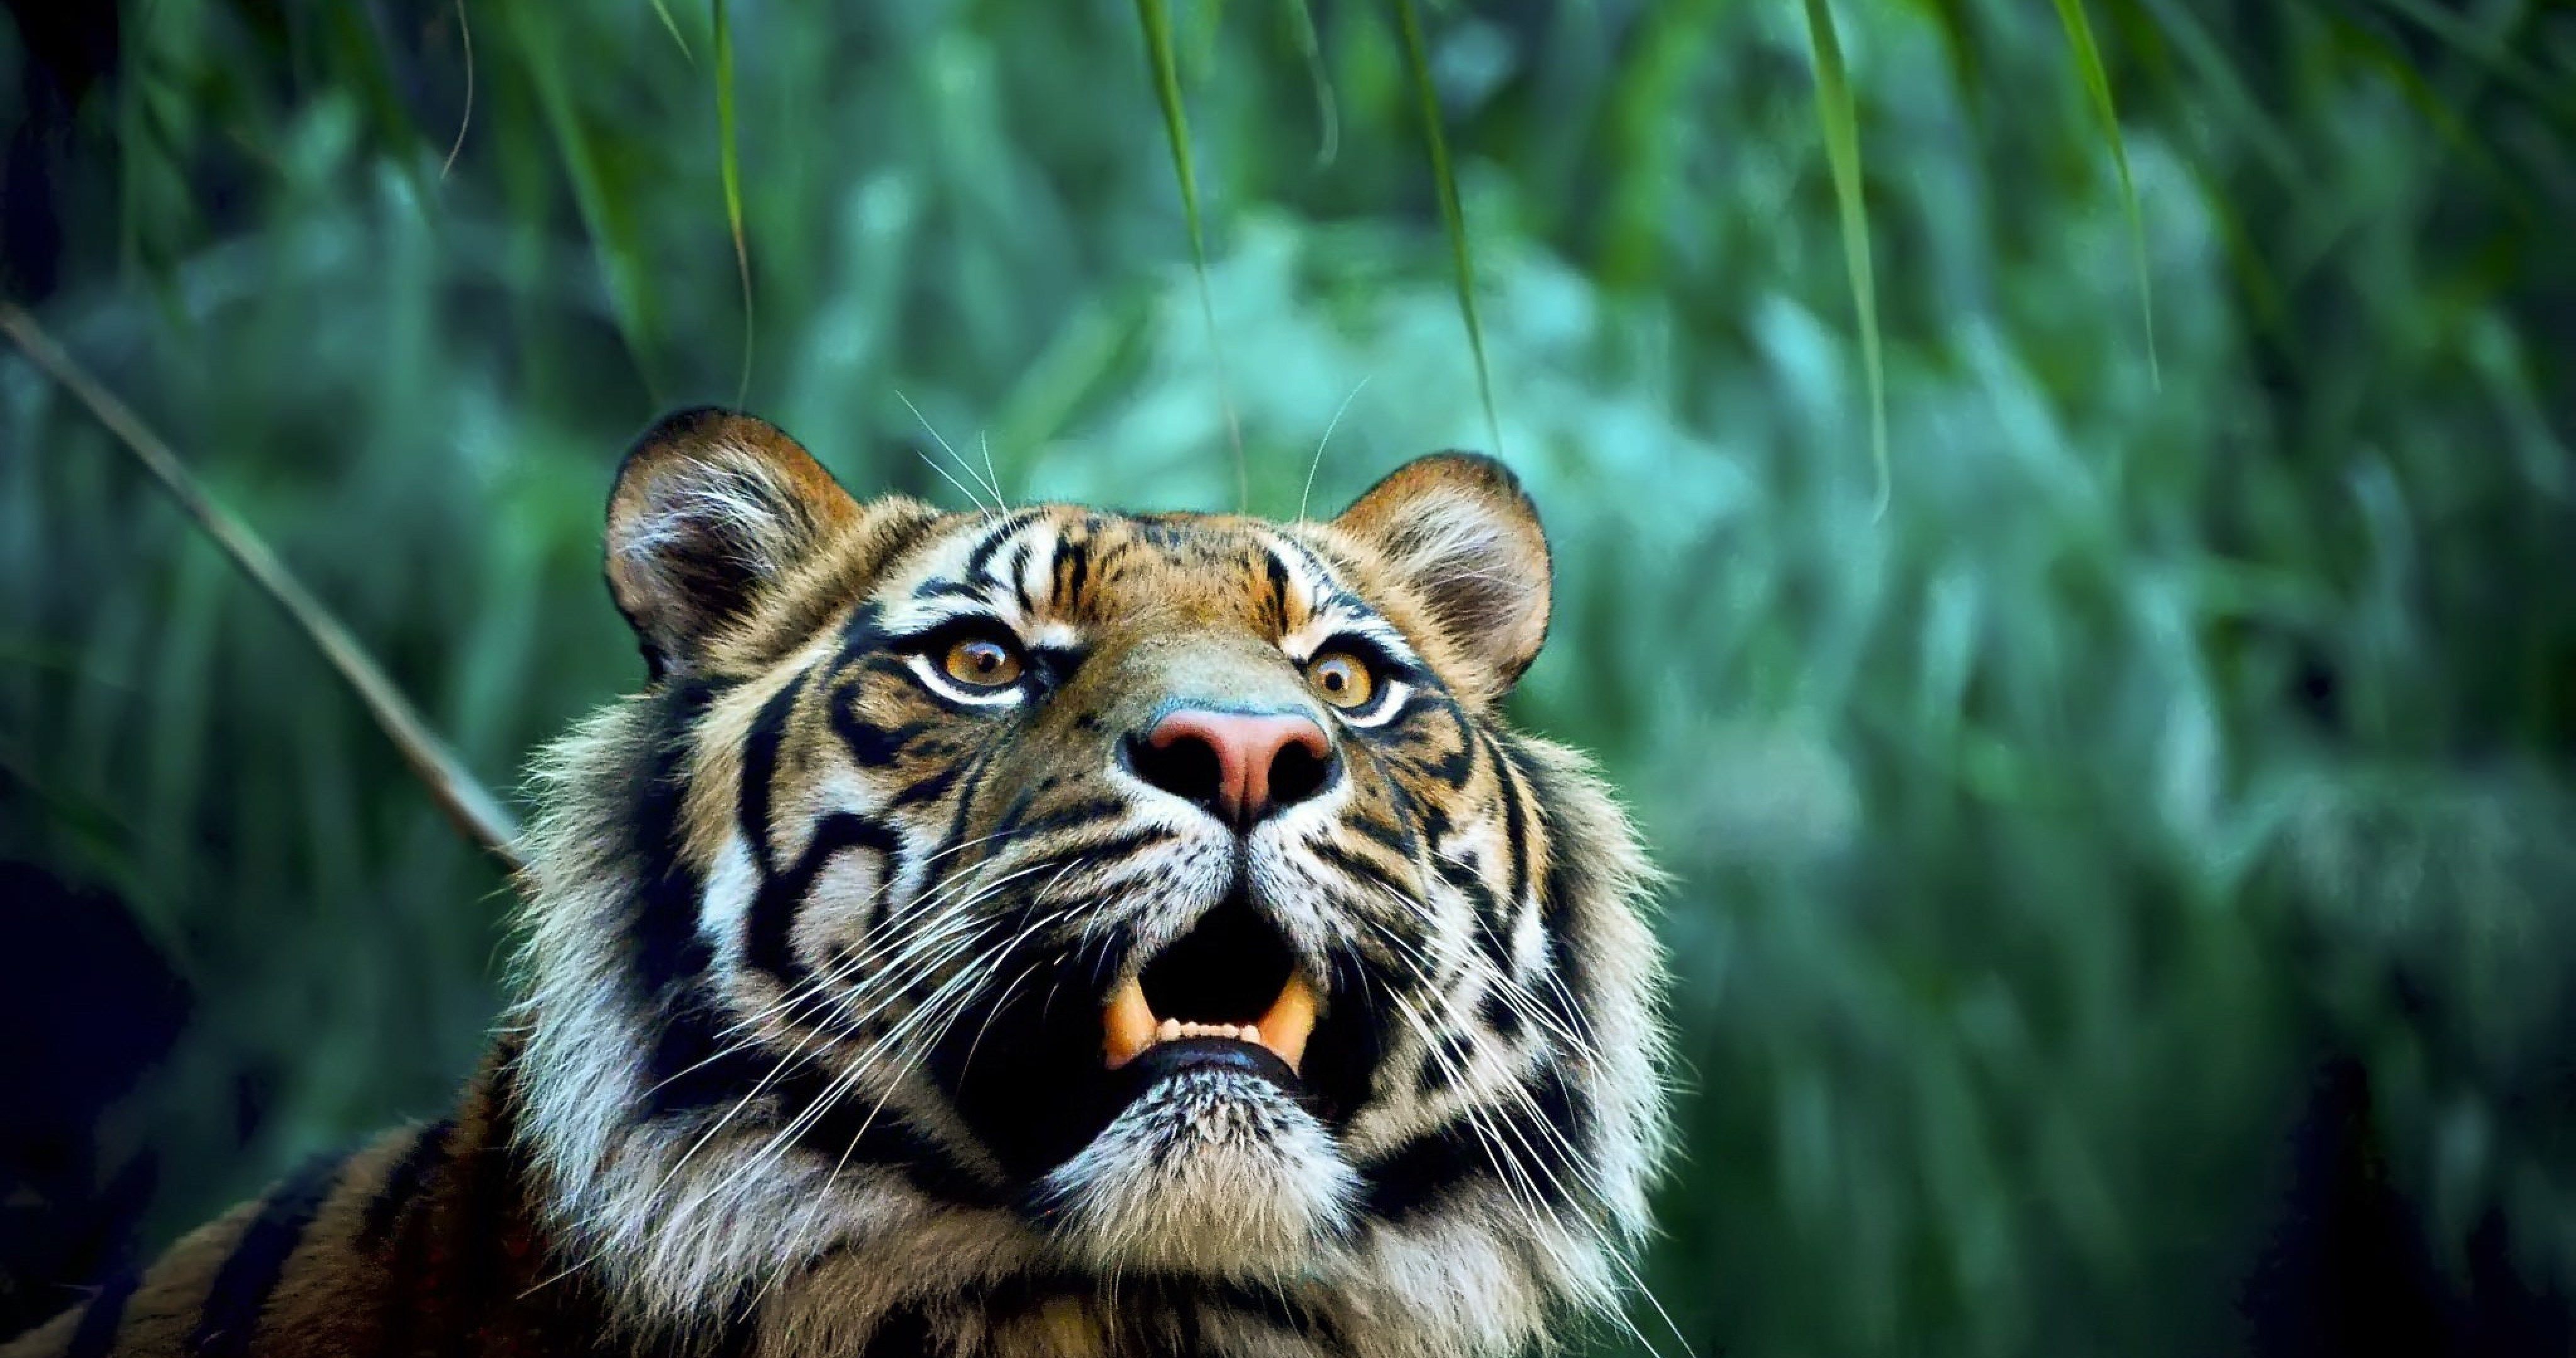 tigre wallpaper,tiger,mammal,wildlife,terrestrial animal,vertebrate